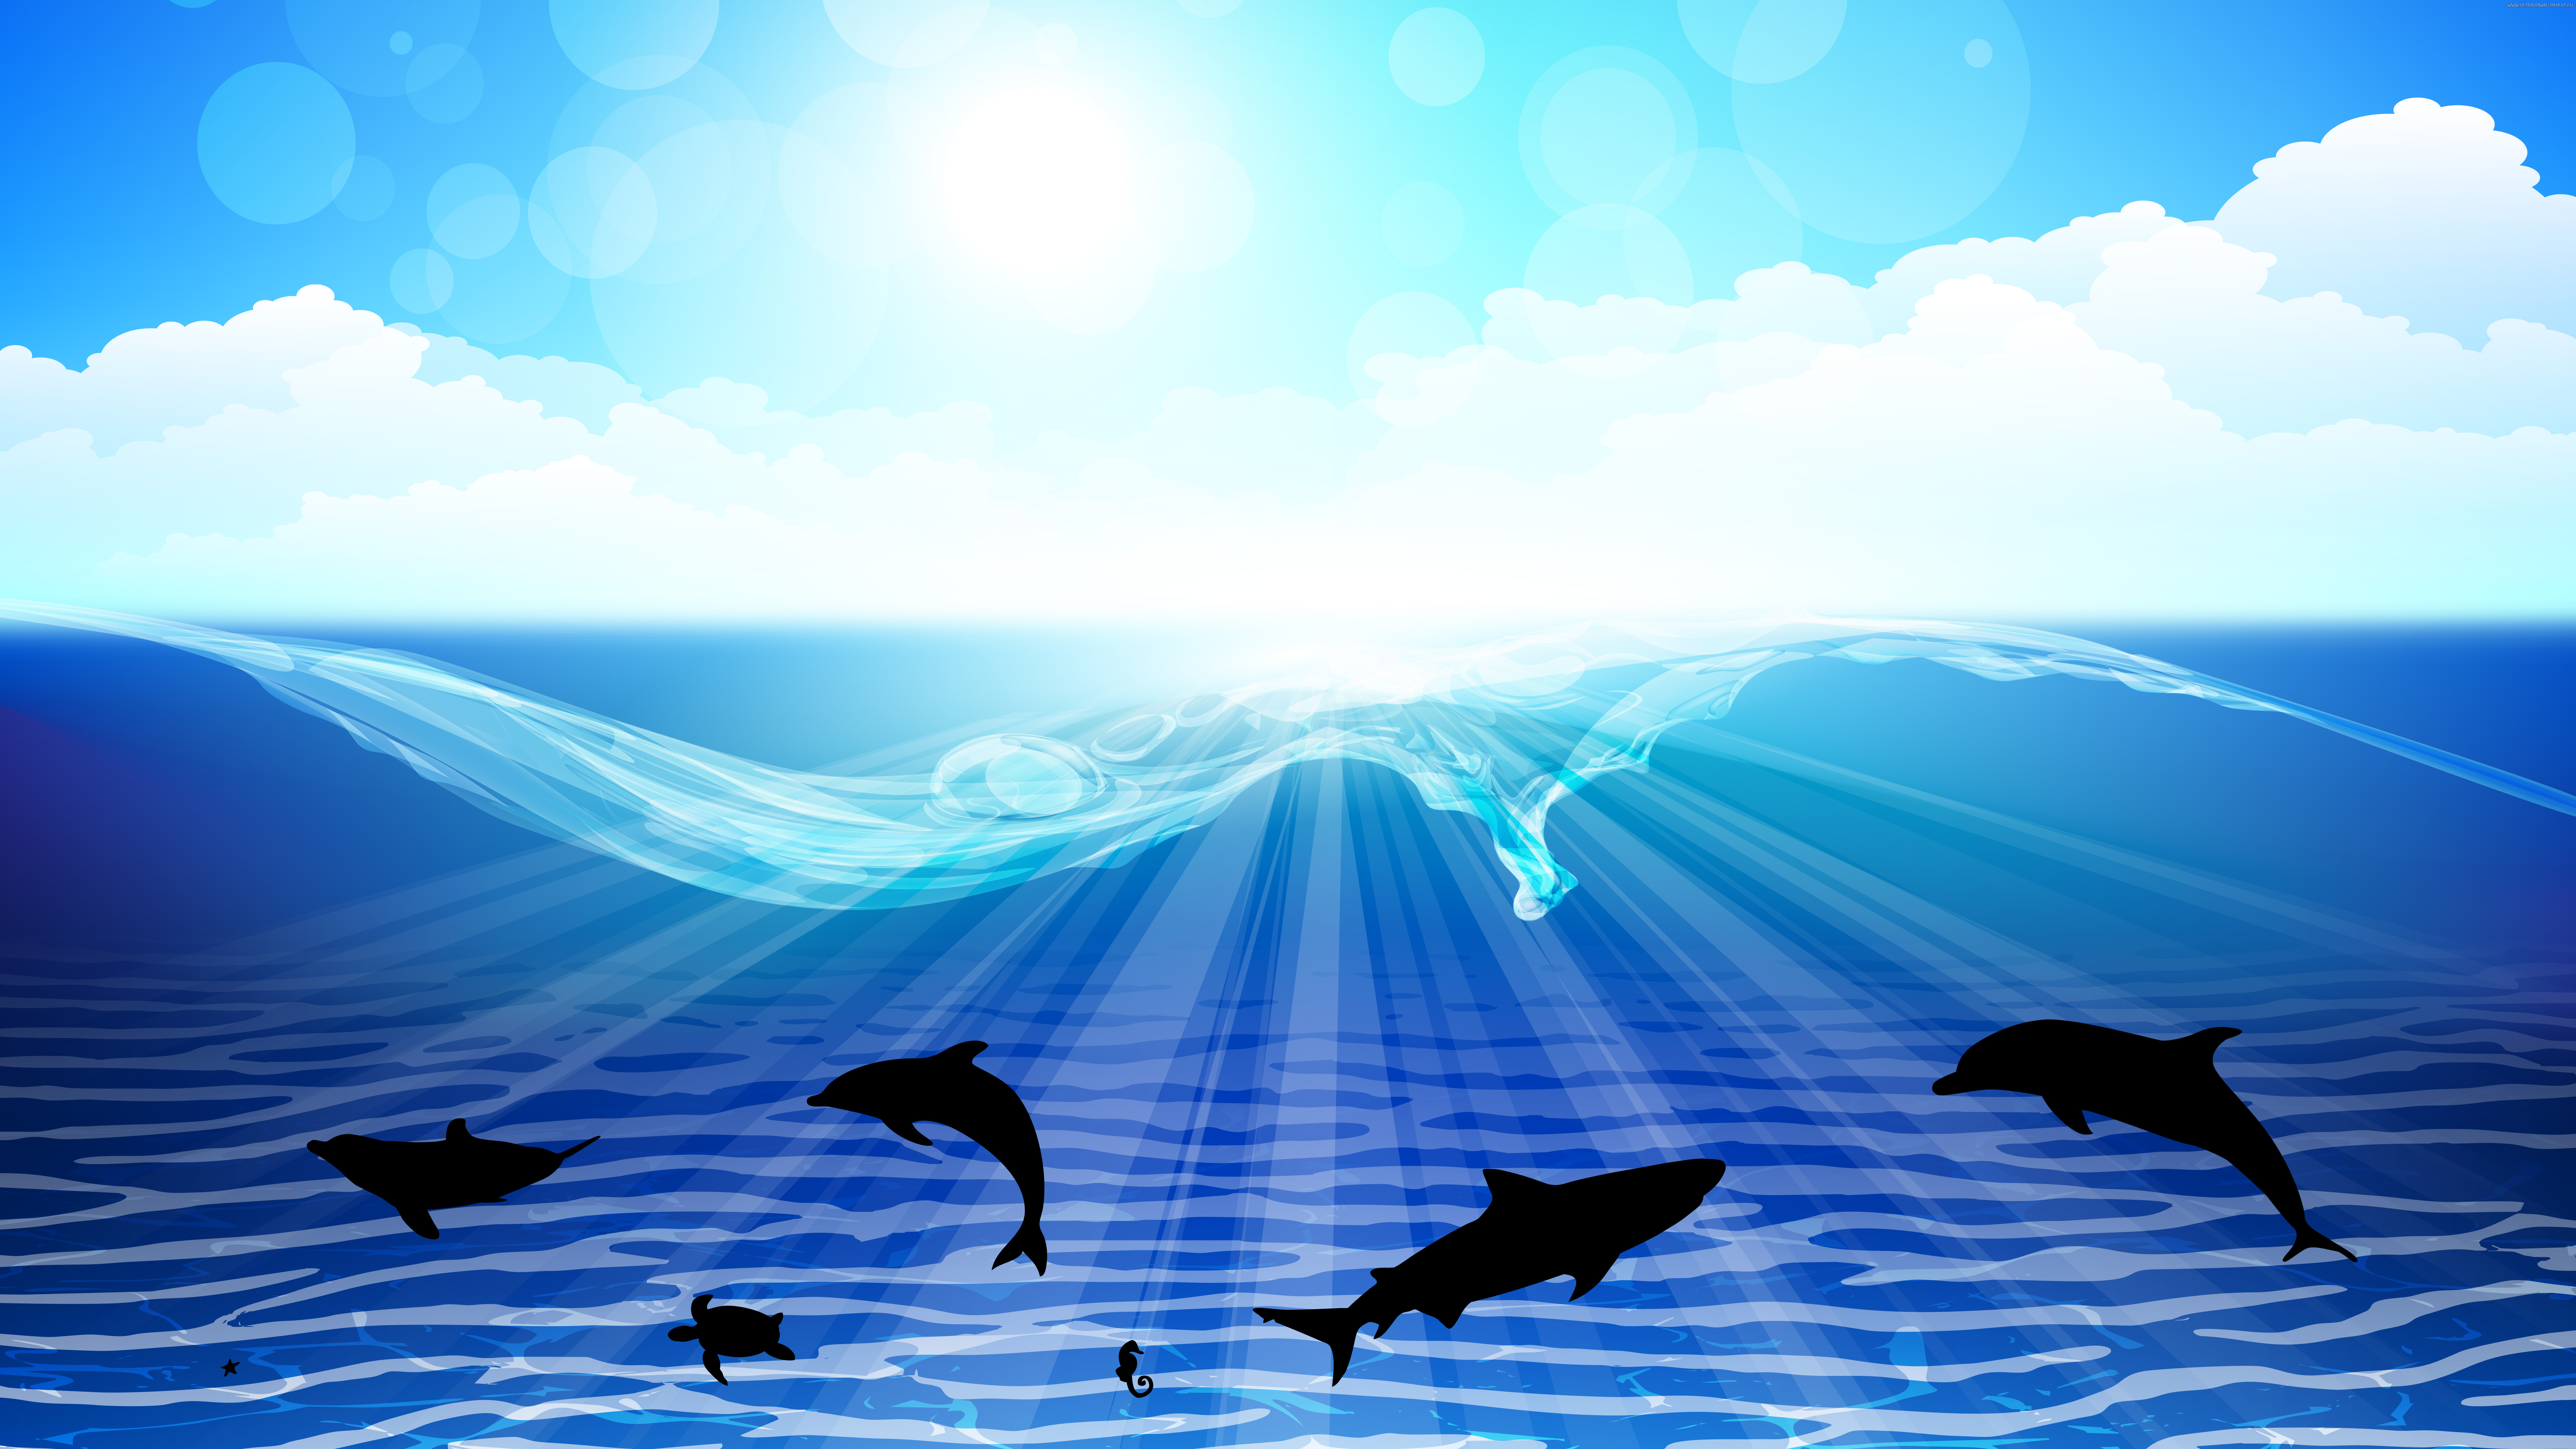  sea dolphin Ultra HD wallpapers 8K 7680x4320 4K 3840x2160 7680x4320